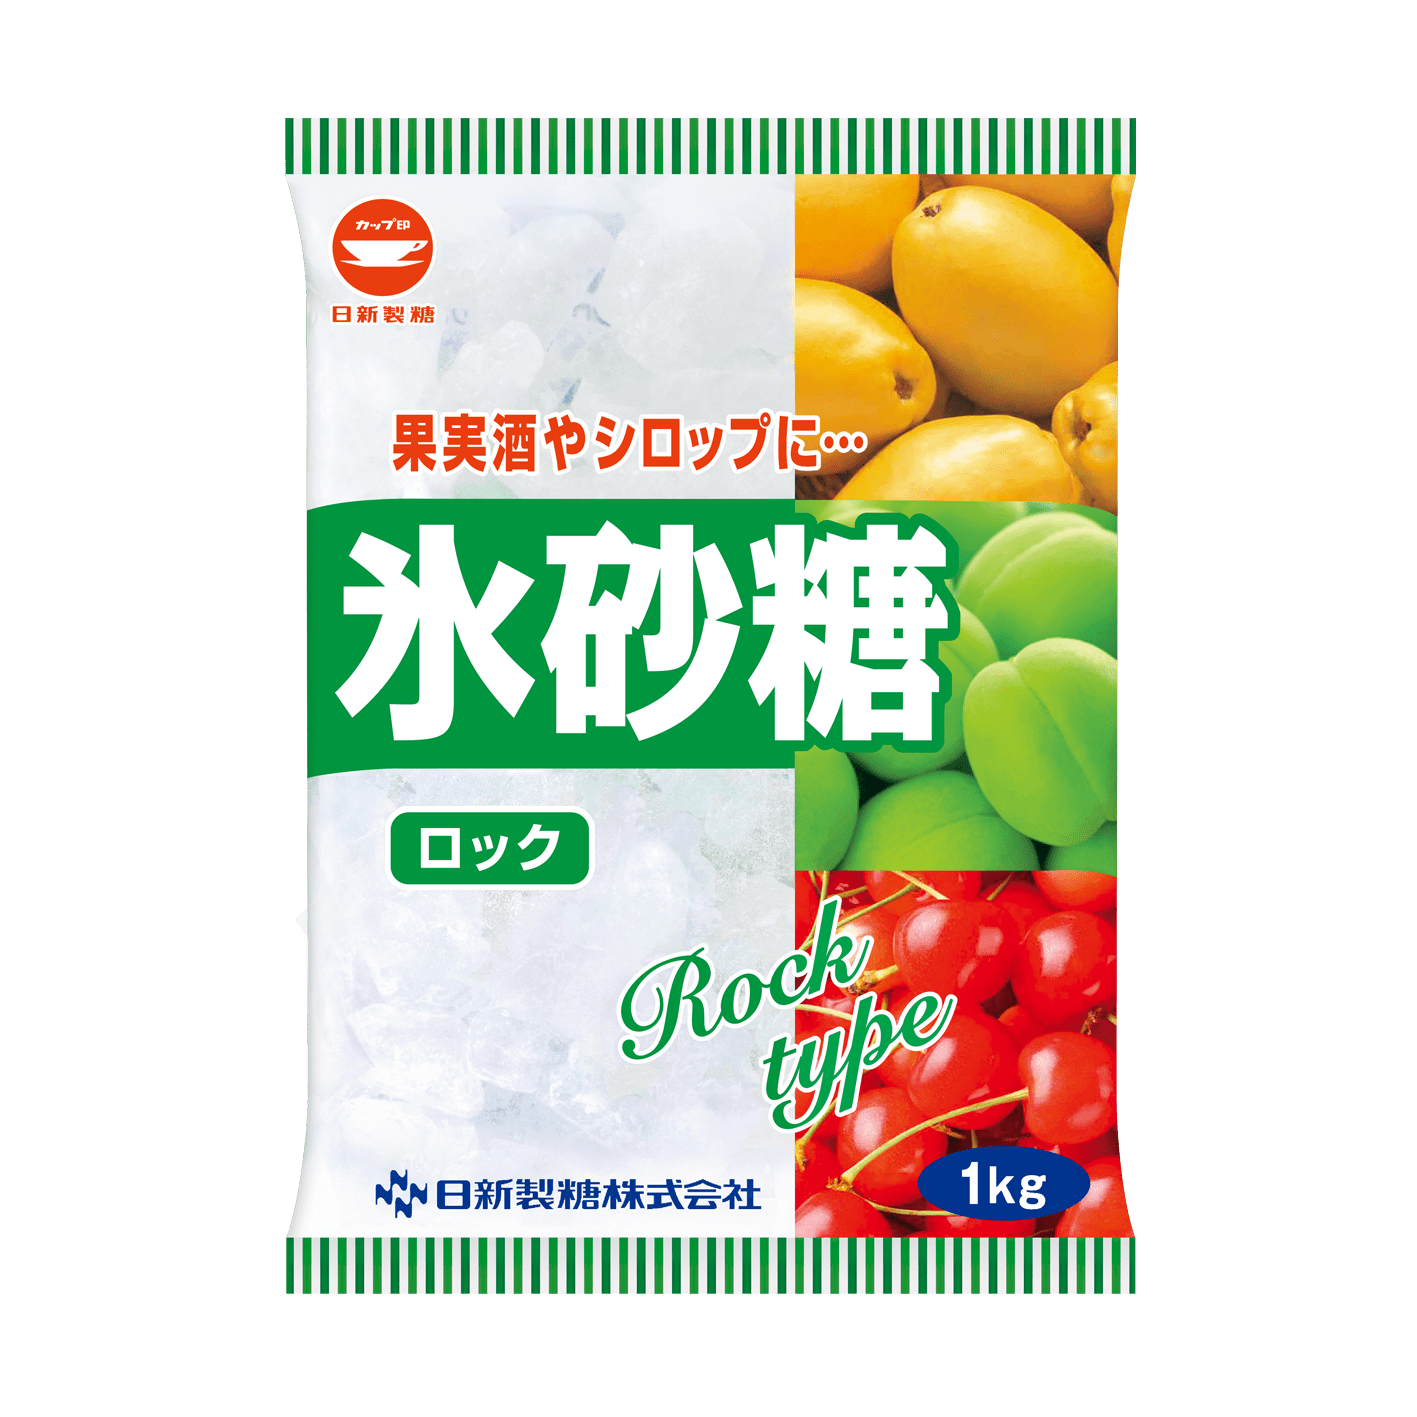 世界の 中日本氷糖 白マーク ロックA 1kg